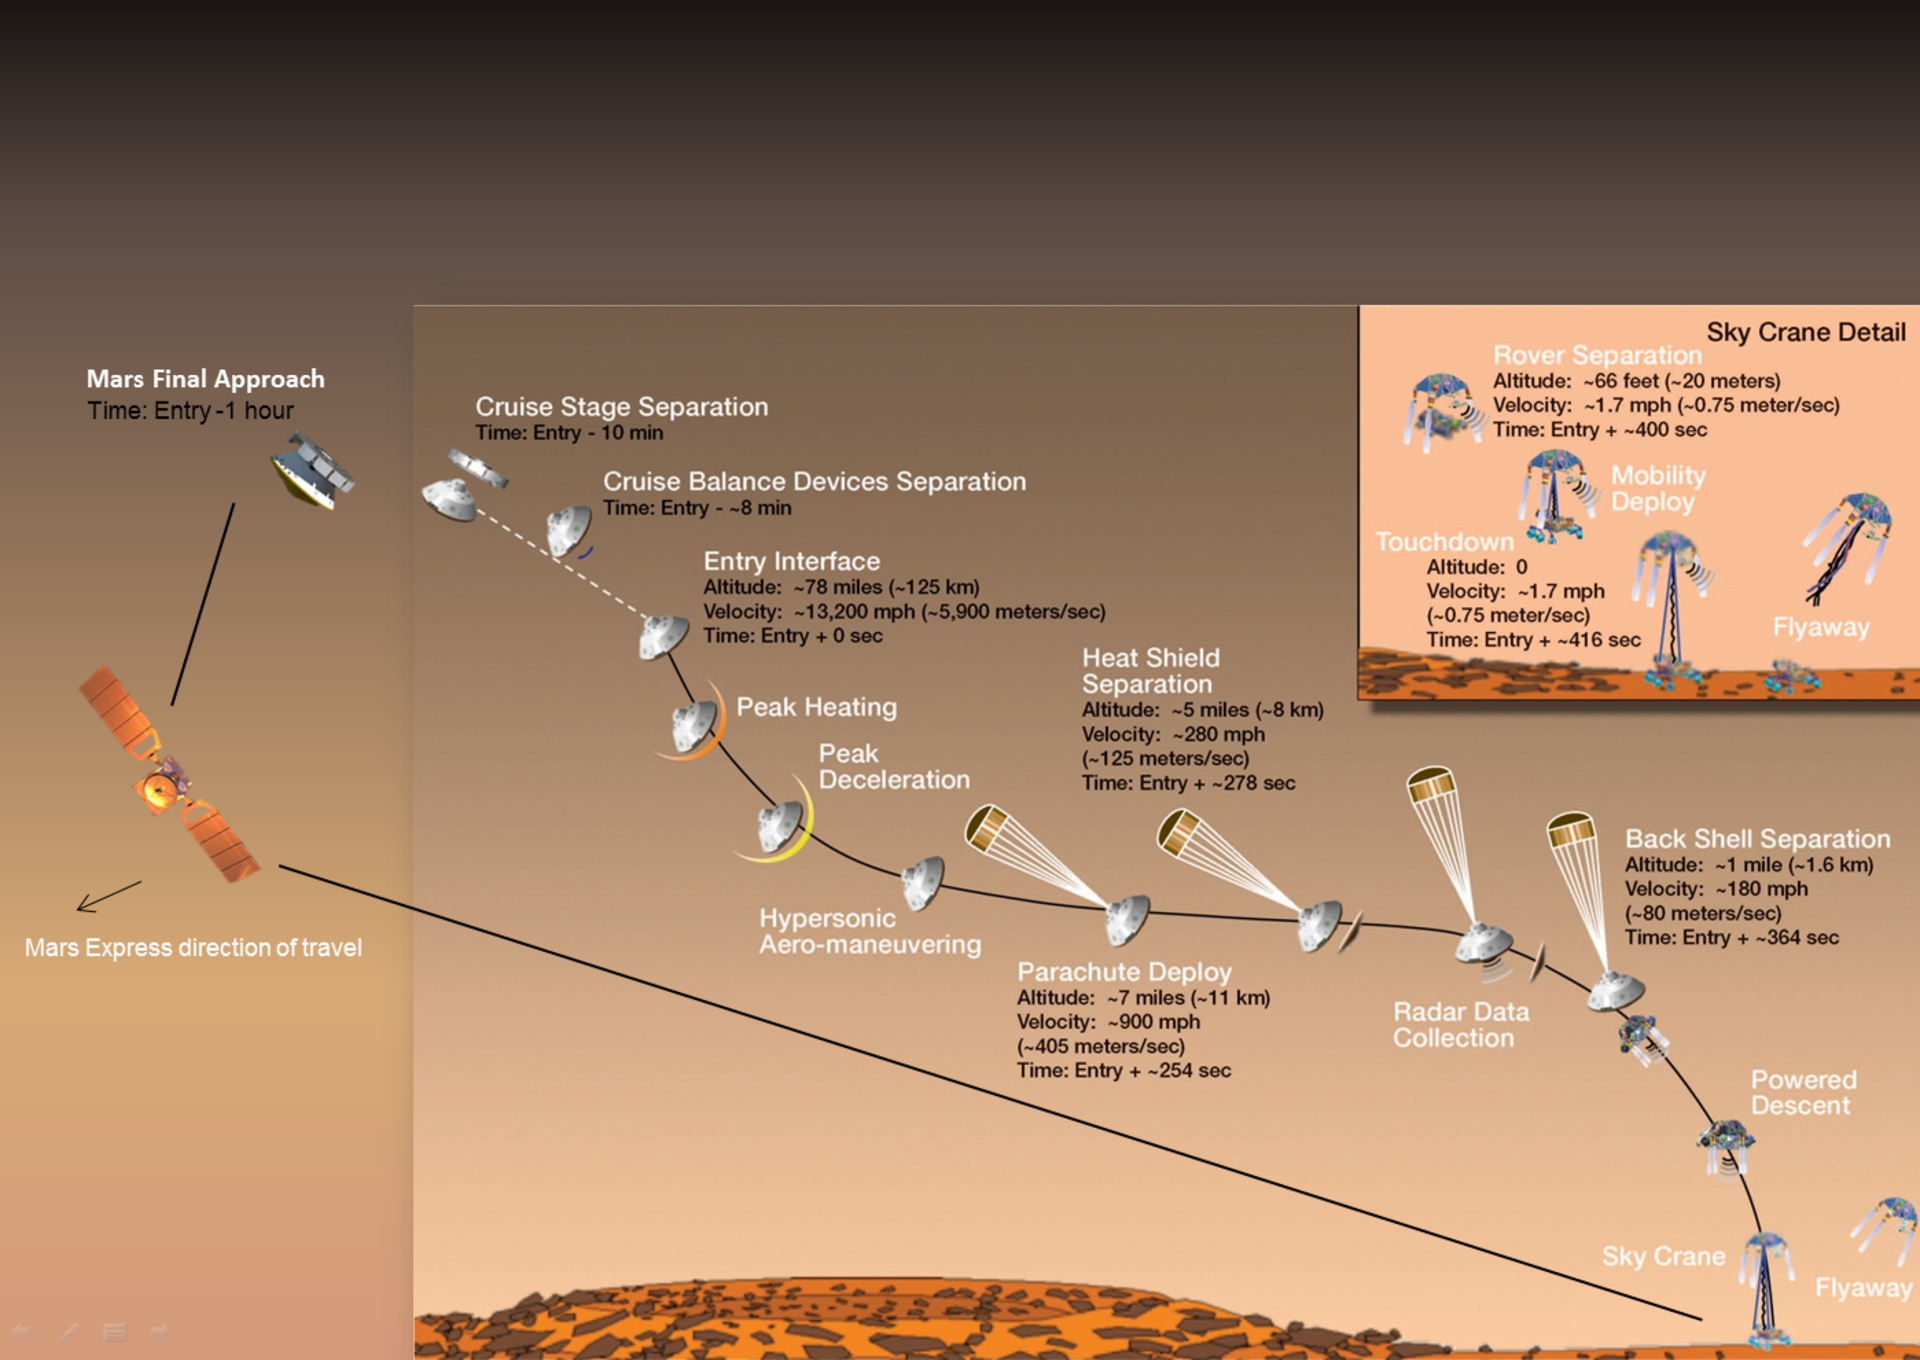 Mars Express verfolgt die Landung von Curiosity